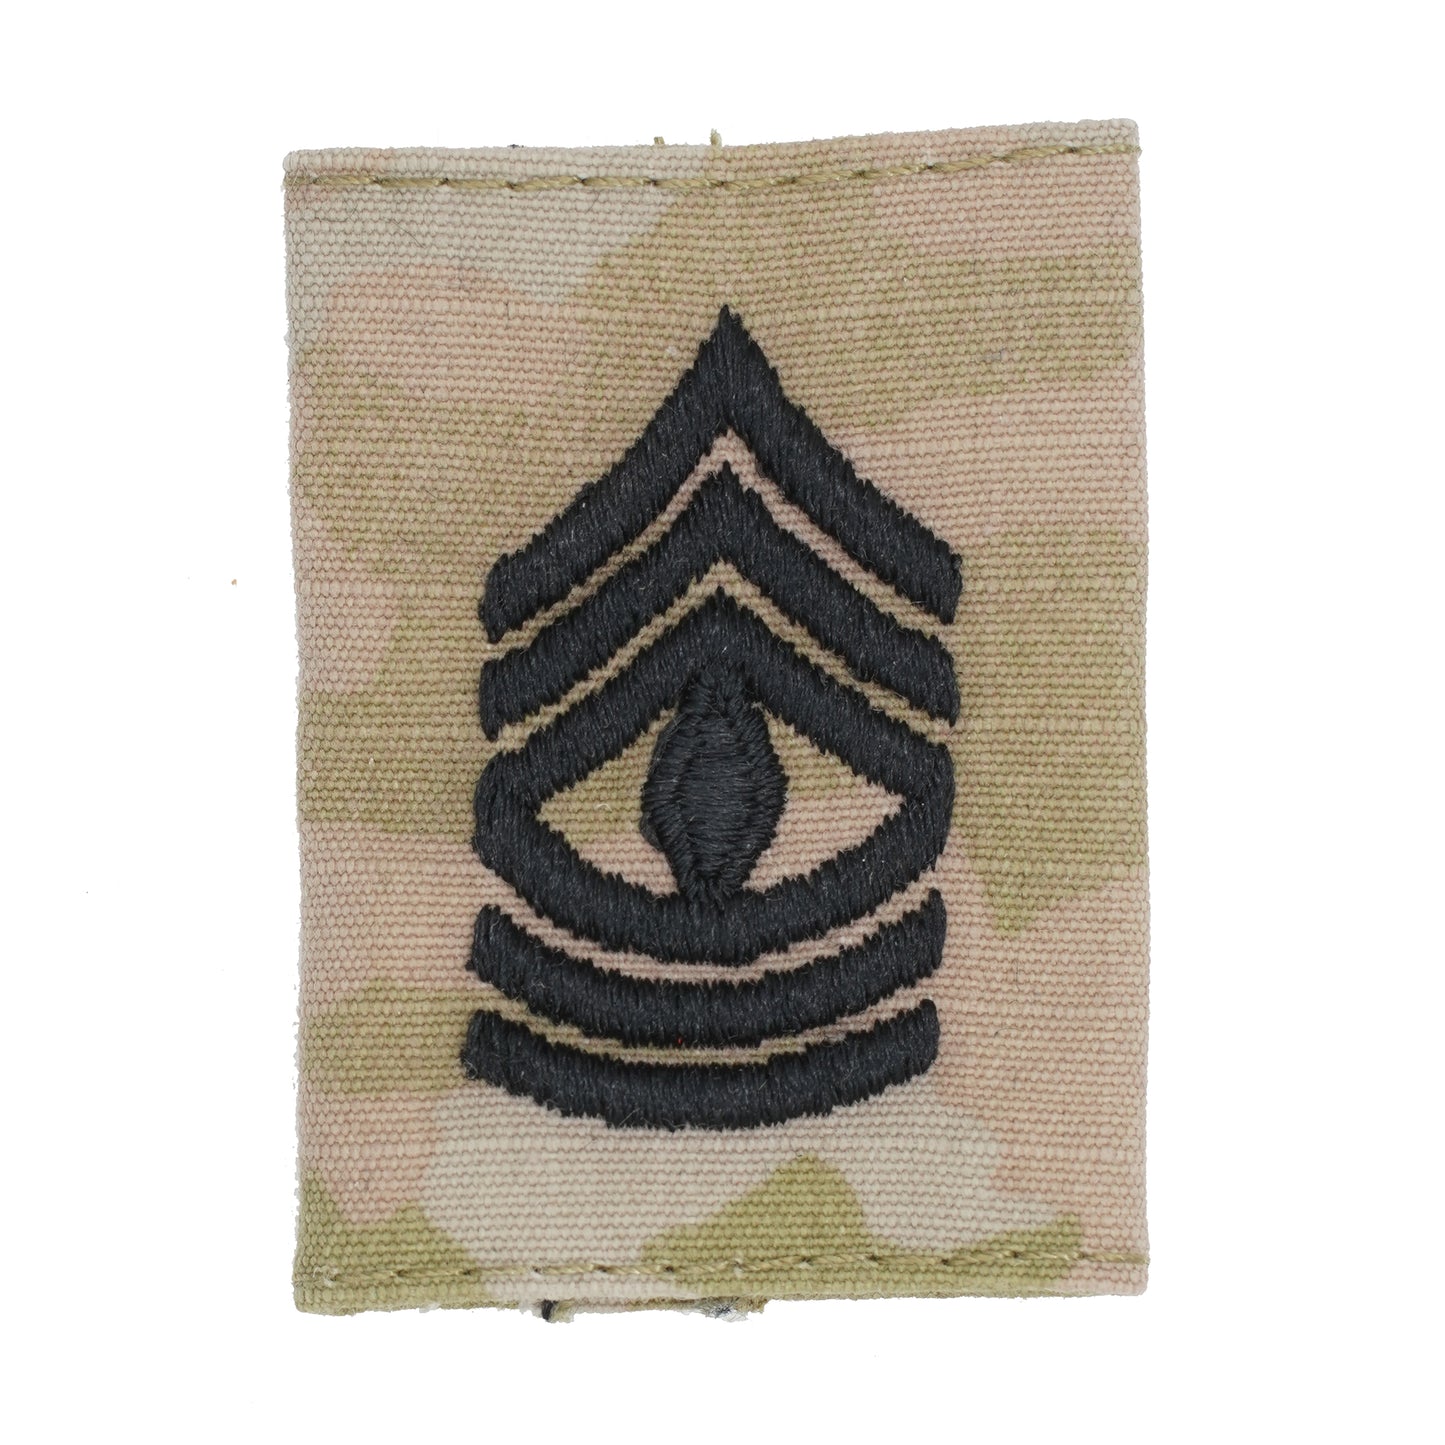 U.S. Army 1st Sgt OCP Gortex.